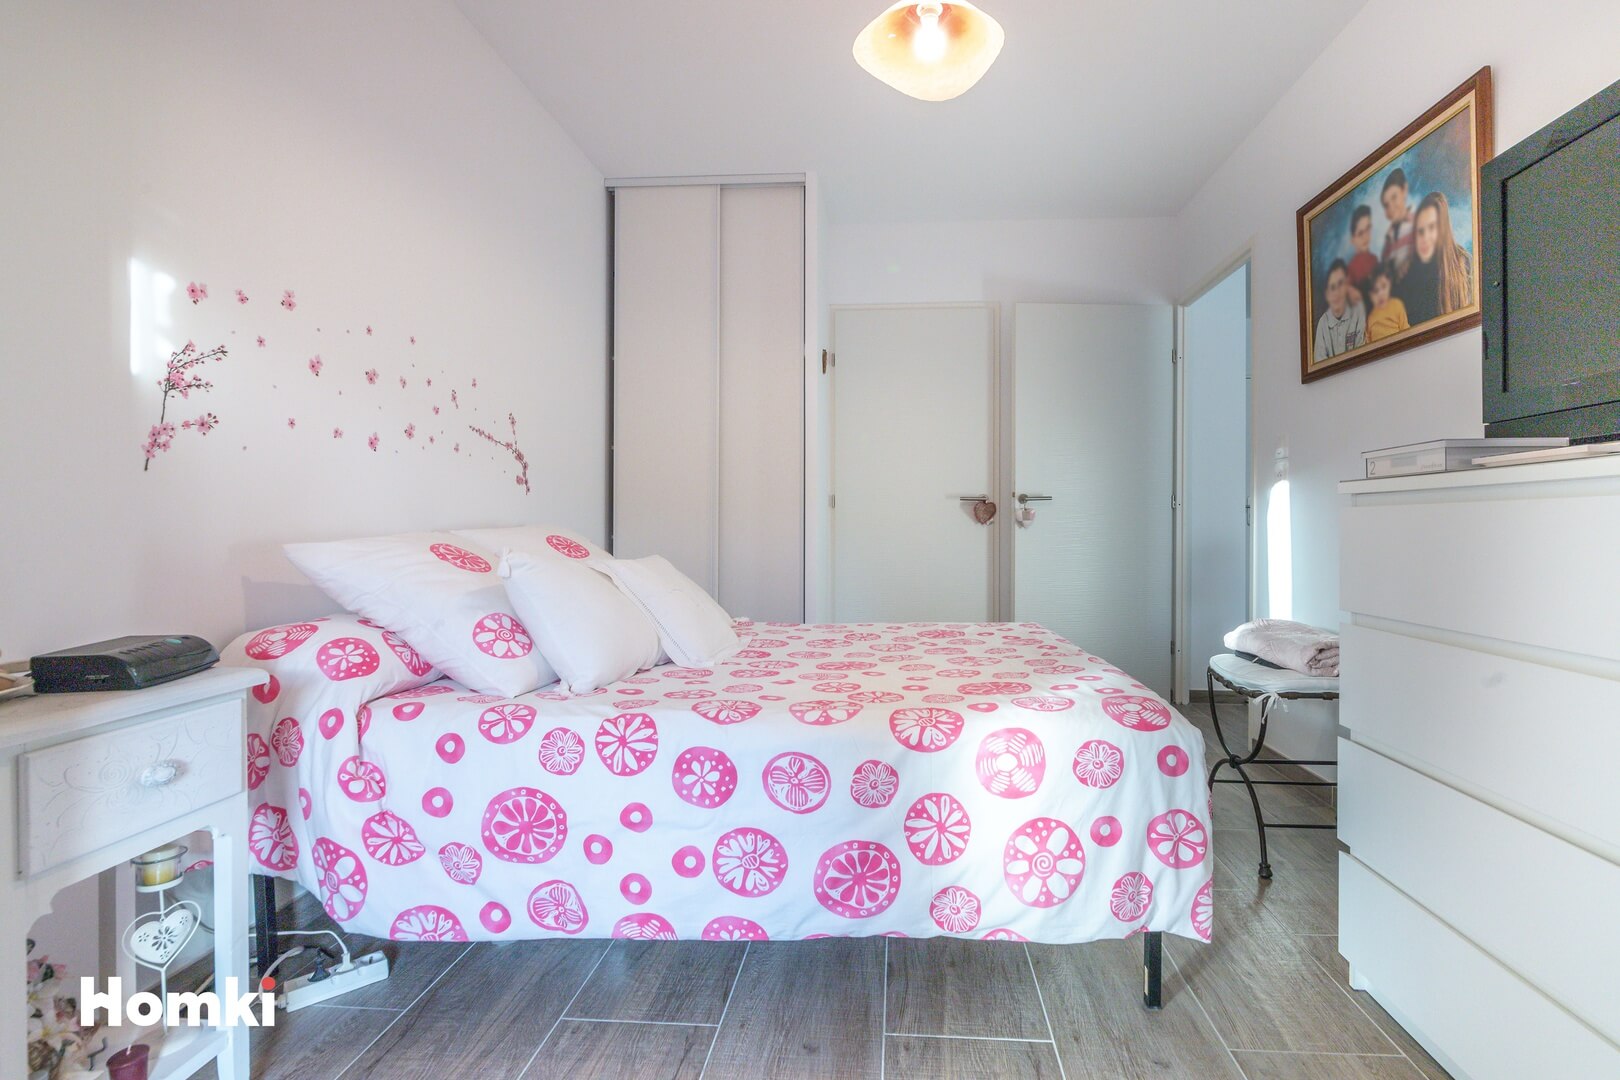 Homki - Vente Appartement  de 42.0 m² à Salon-de-Provence 13300